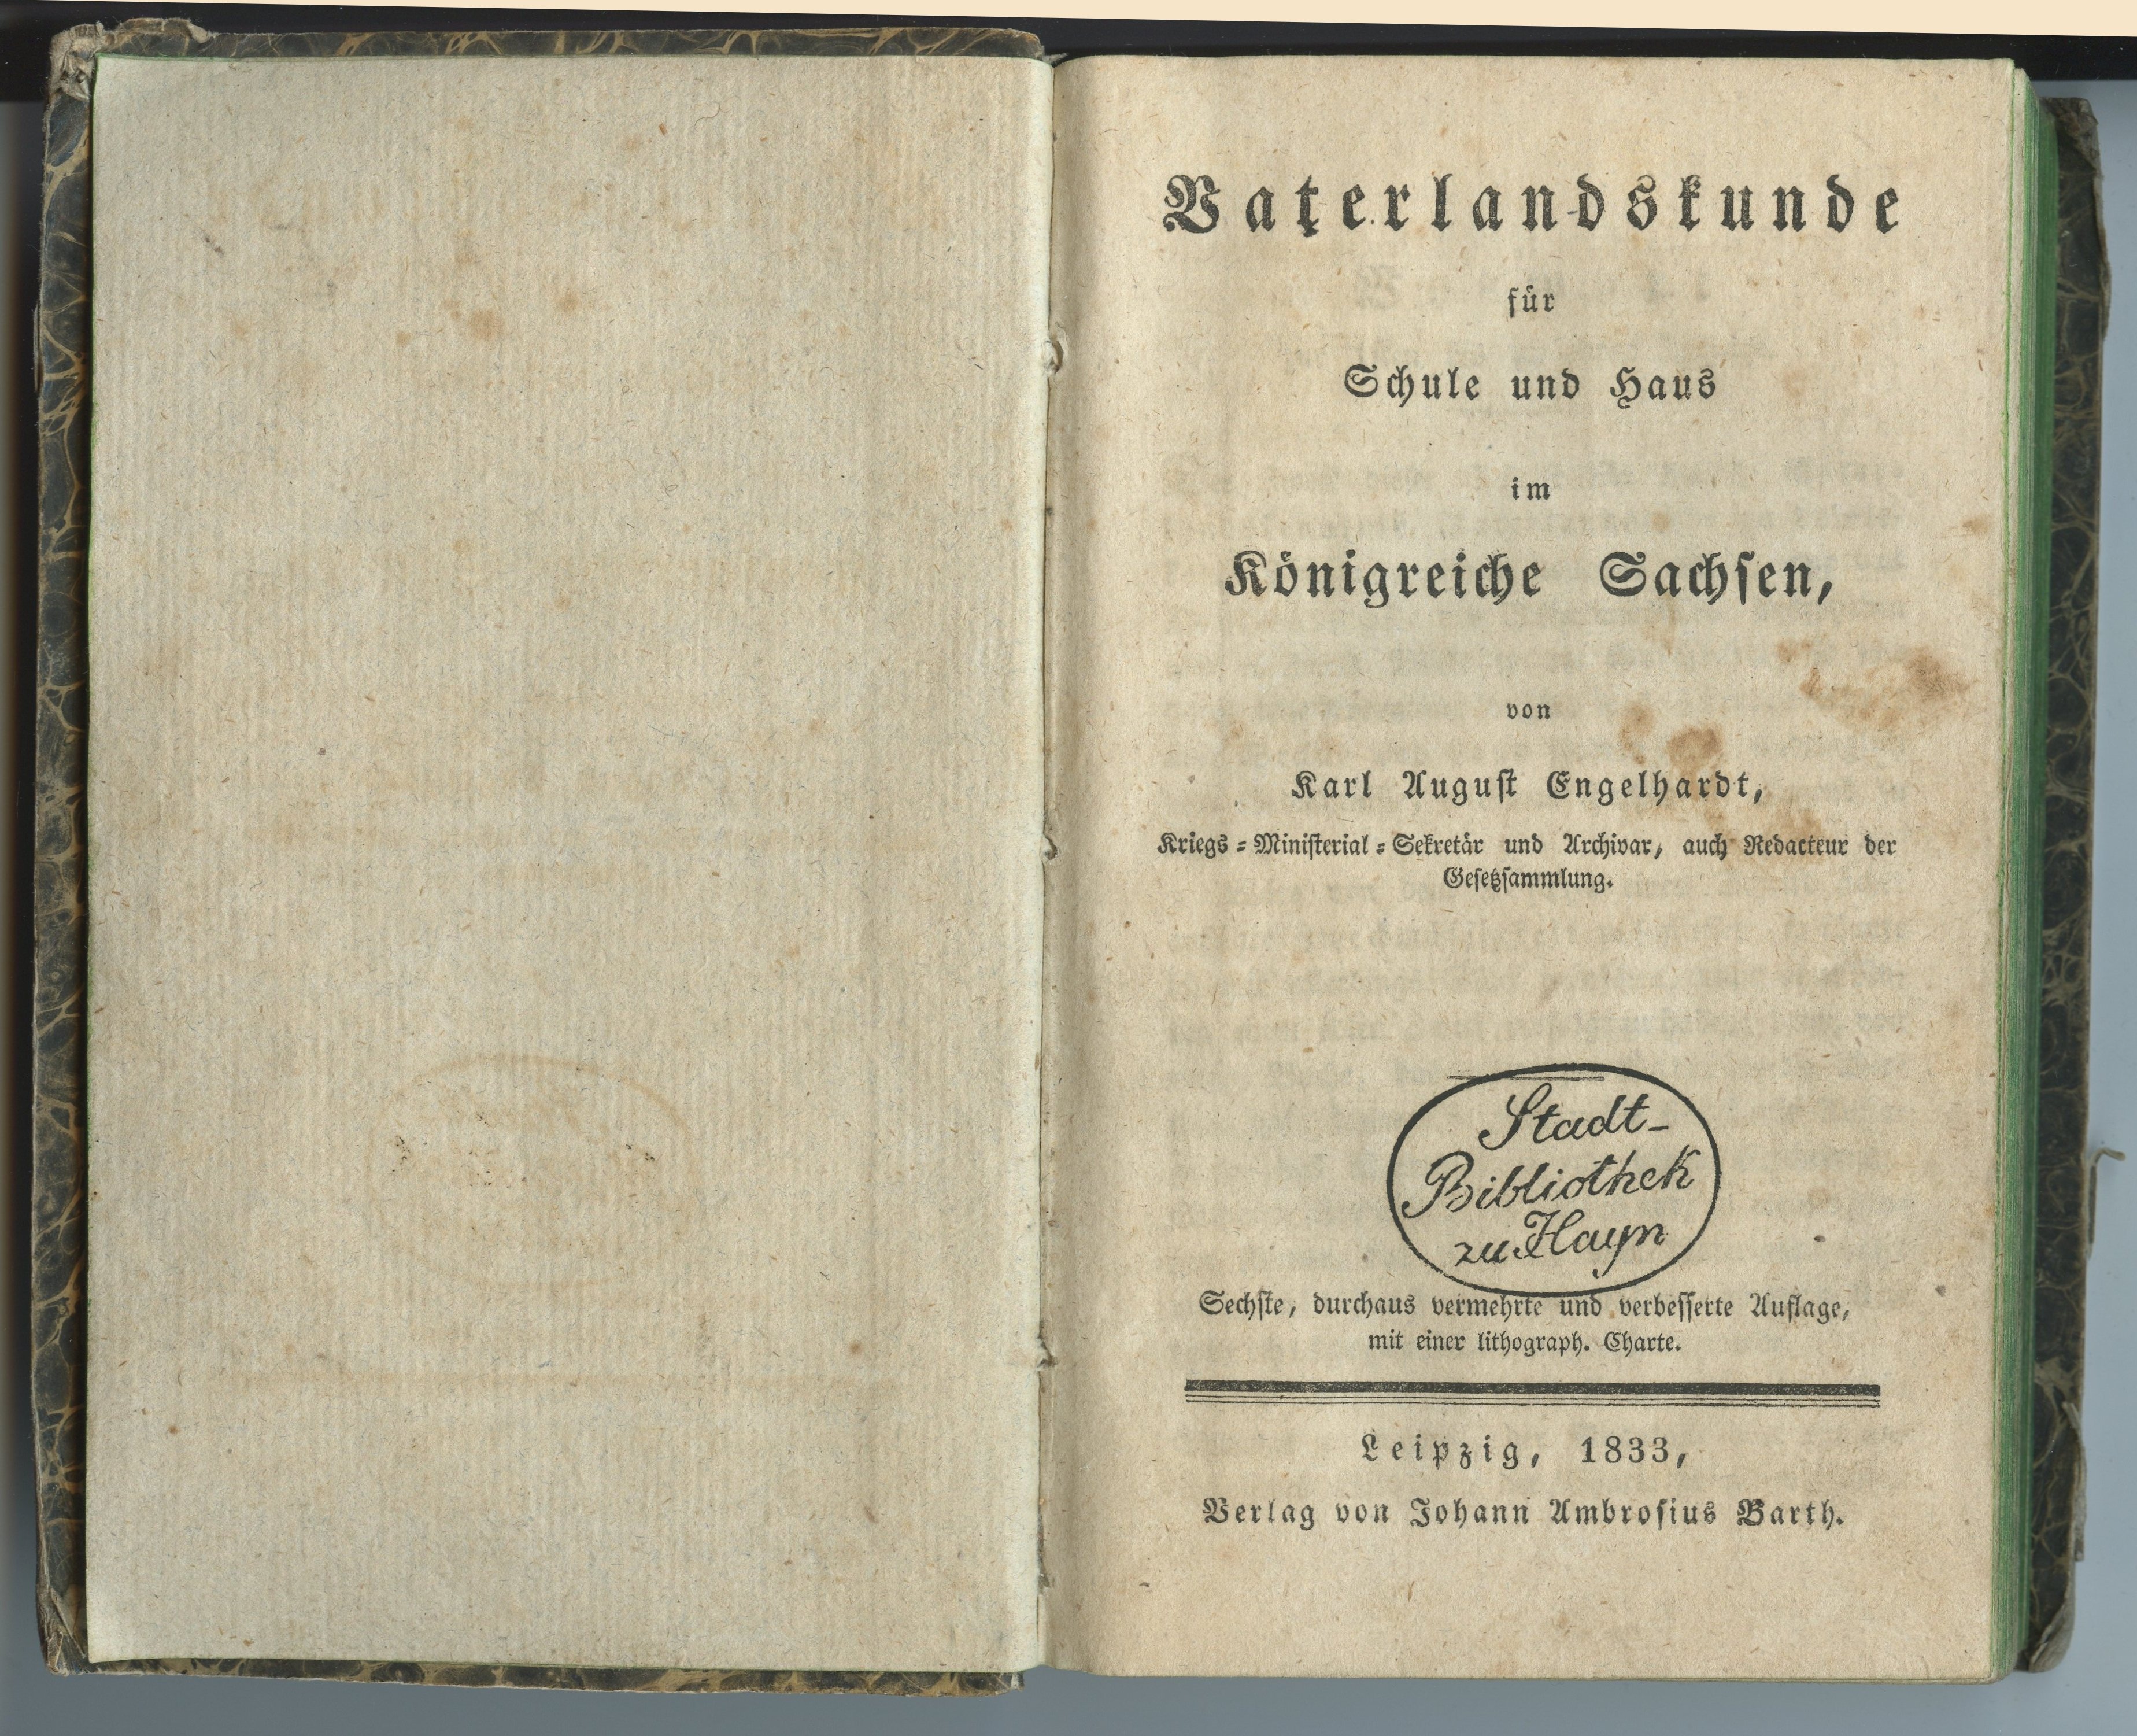 Engelhardt, Karl August: Vaterlandskunde für Schule und Haus im Königreiche Sachsen, 1833 (Museum Alte Lateinschule CC BY-NC-SA)